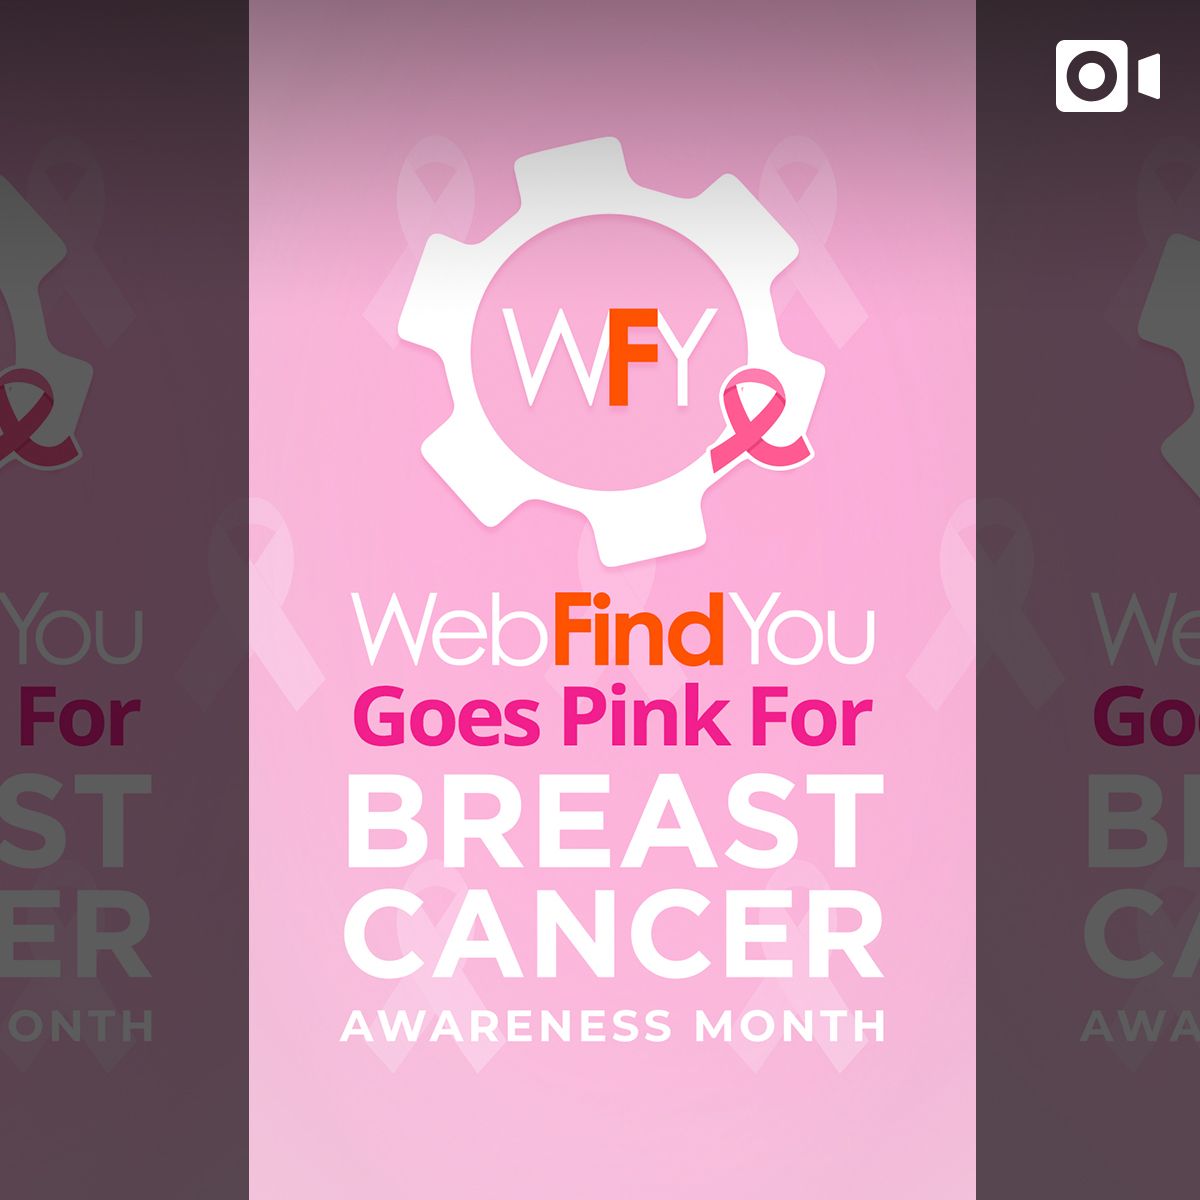 WebFindYou Goes Pink For Brast Cancer Awareness Month